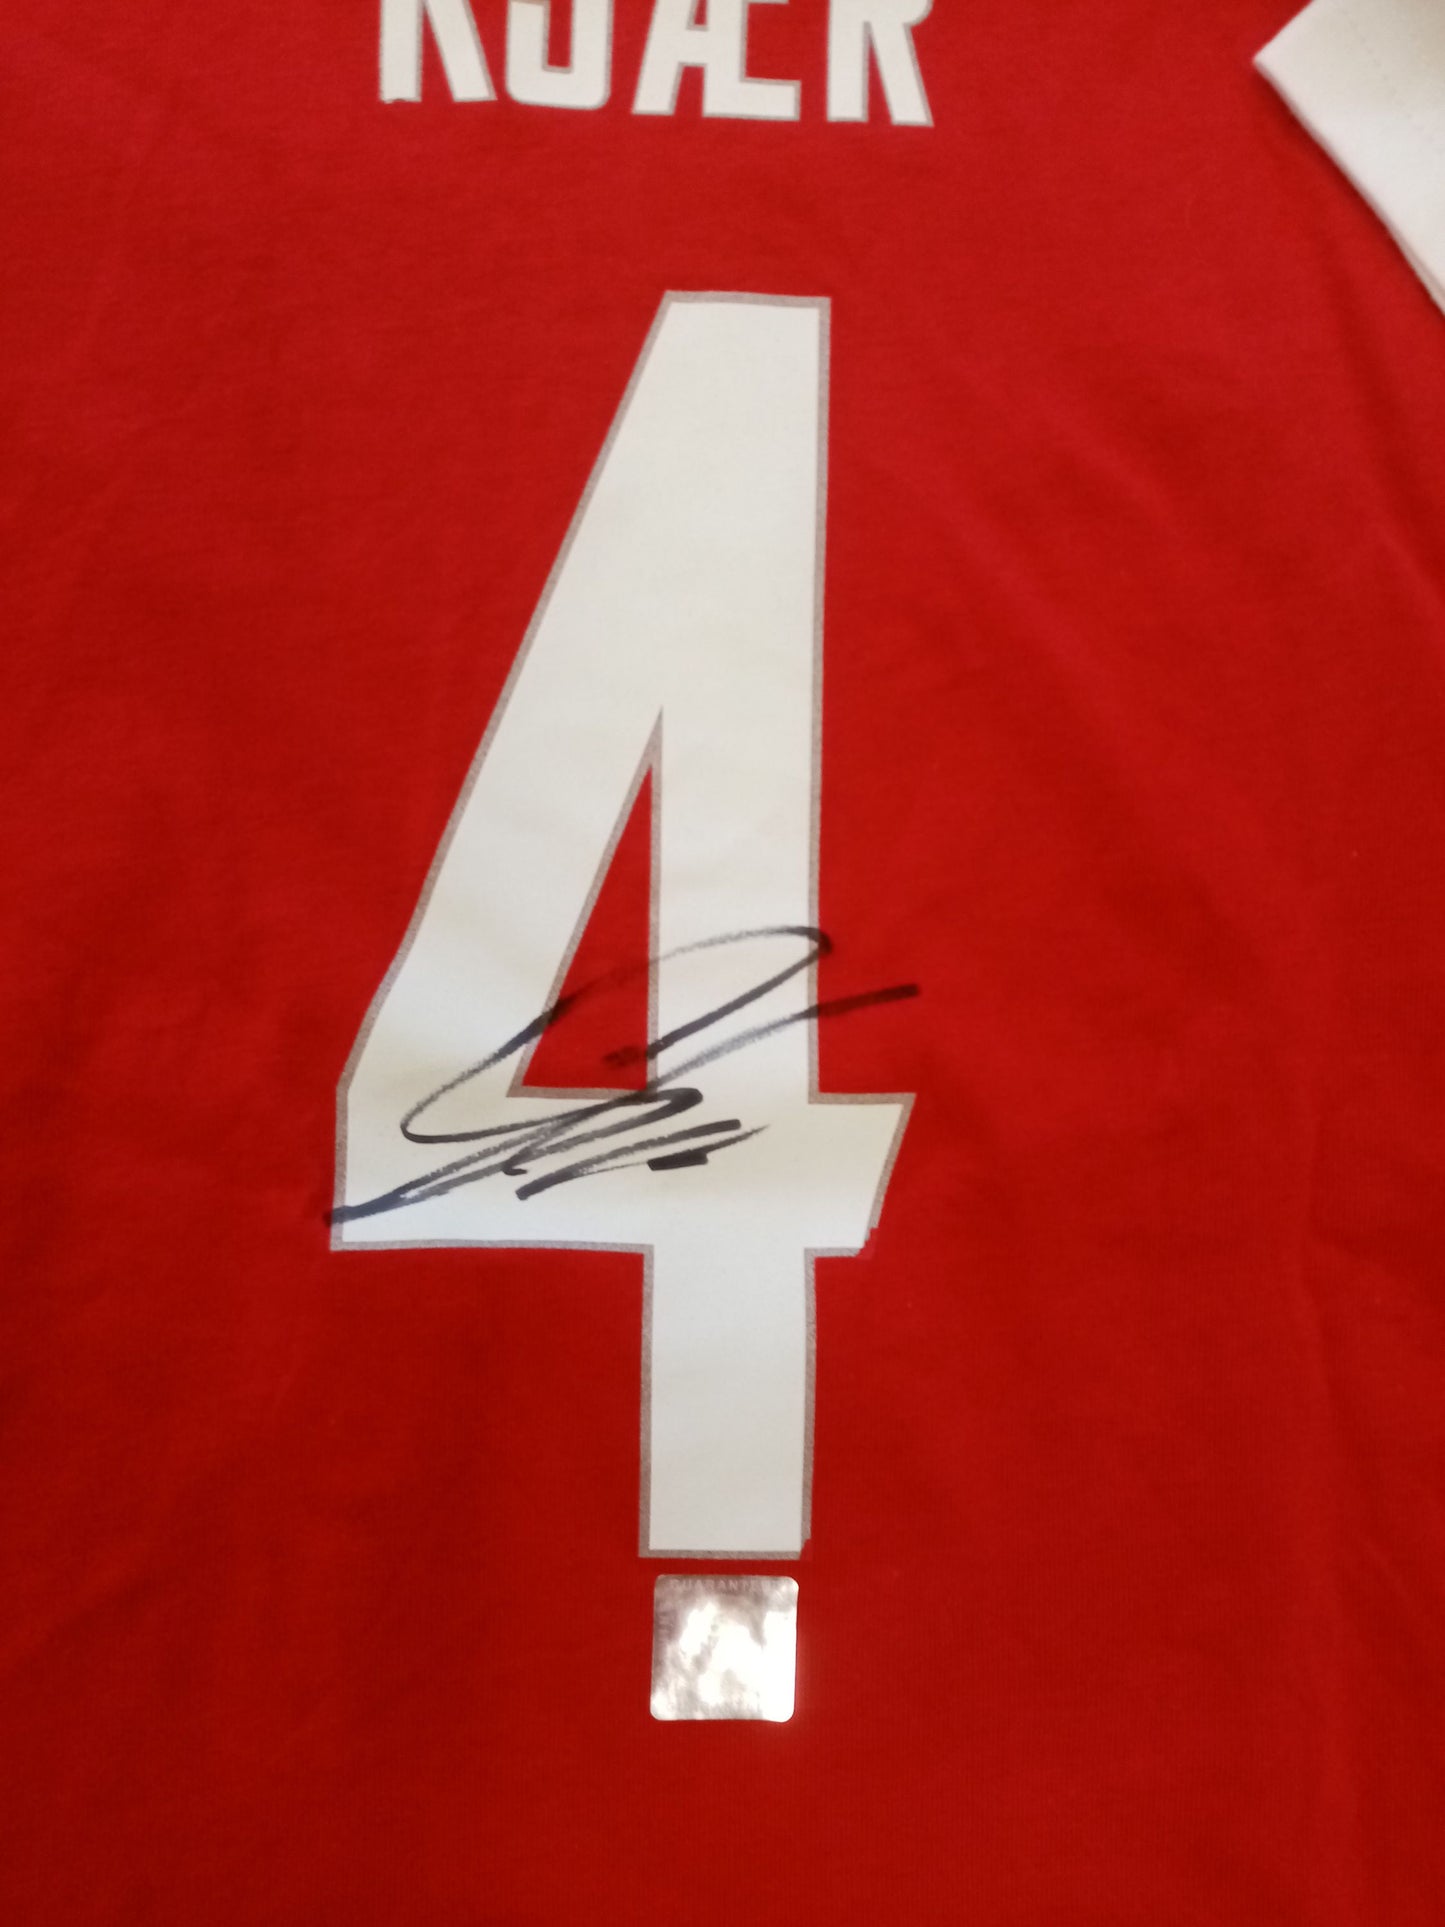 Dänemark Shirt Simon Kjaer signiert im Rahmen COA Hummel Fußball 140